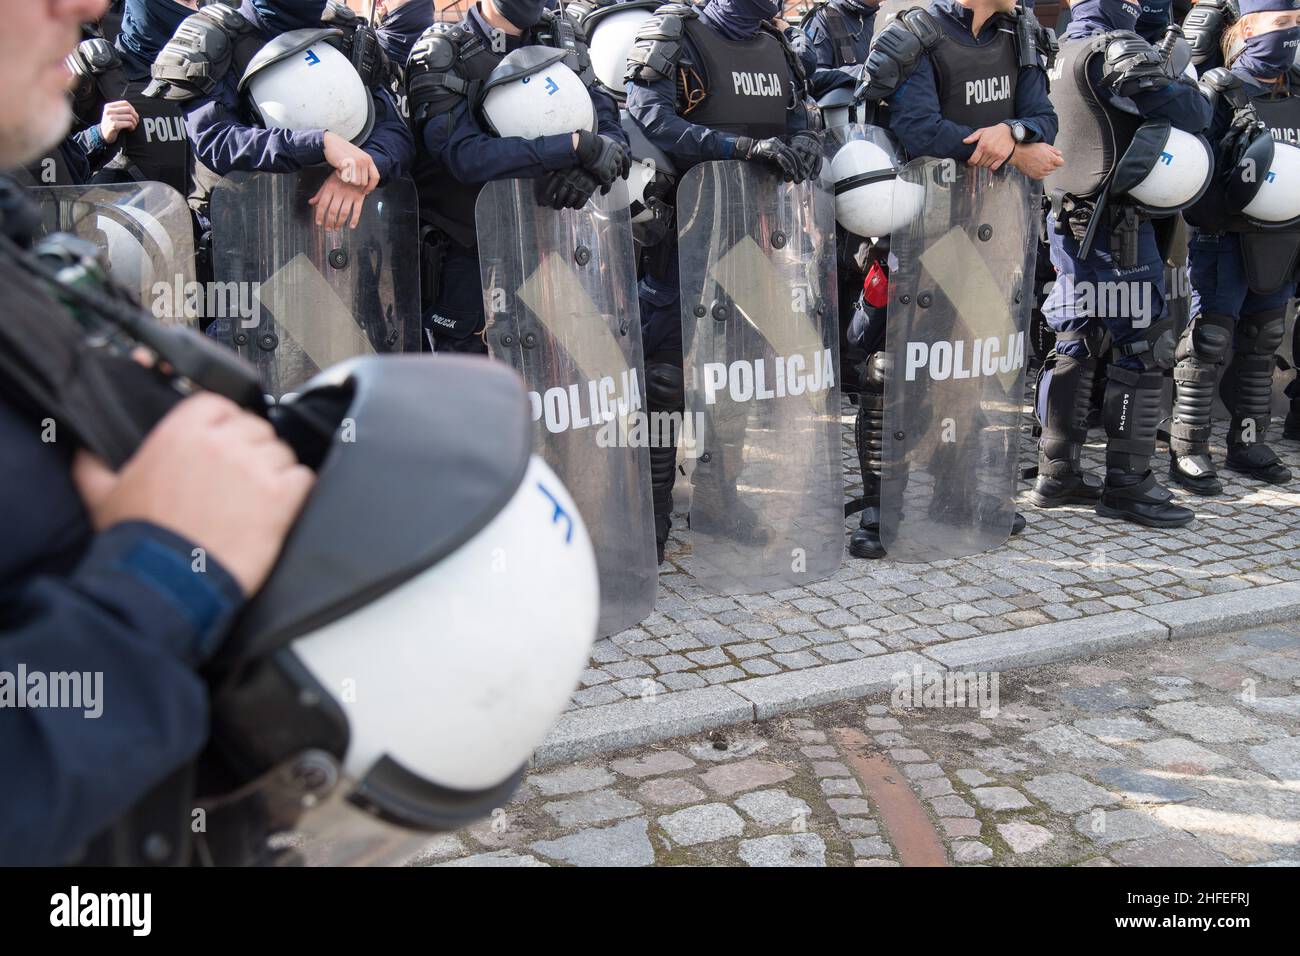 Anti-riot Polish police in Gdansk, Poland © Wojciech Strozyk / Alamy Stock Photo Stock Photo